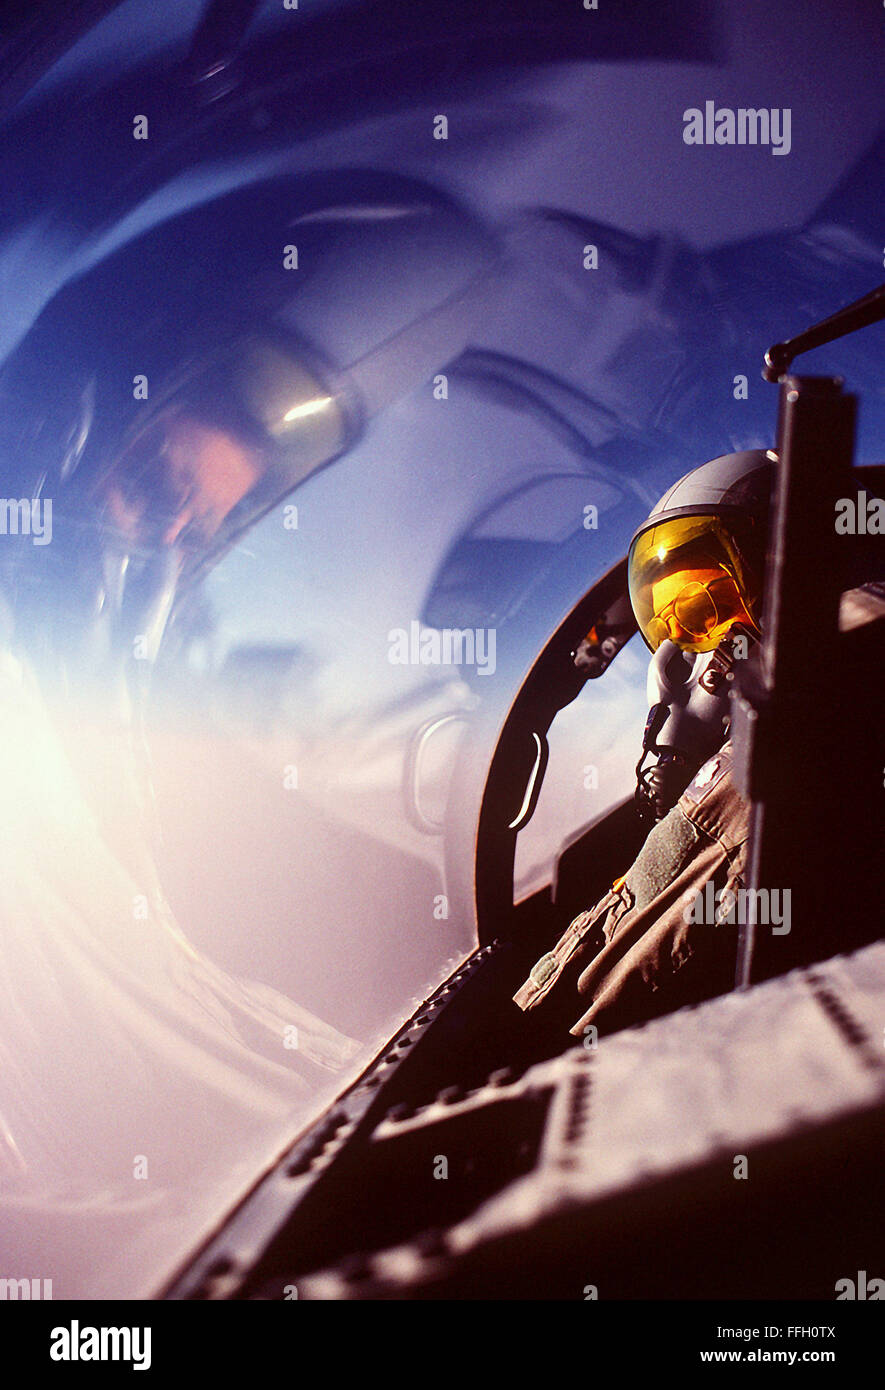 Le lieutenant-colonel George Wagasky de la 1re Escadre de chasse tactique balaie l'horizon depuis le cockpit de son avion F-15D Eagle lors d'une patrouille de combat près de la frontière irakienne au cours de l'opération Bouclier du désert. Banque D'Images